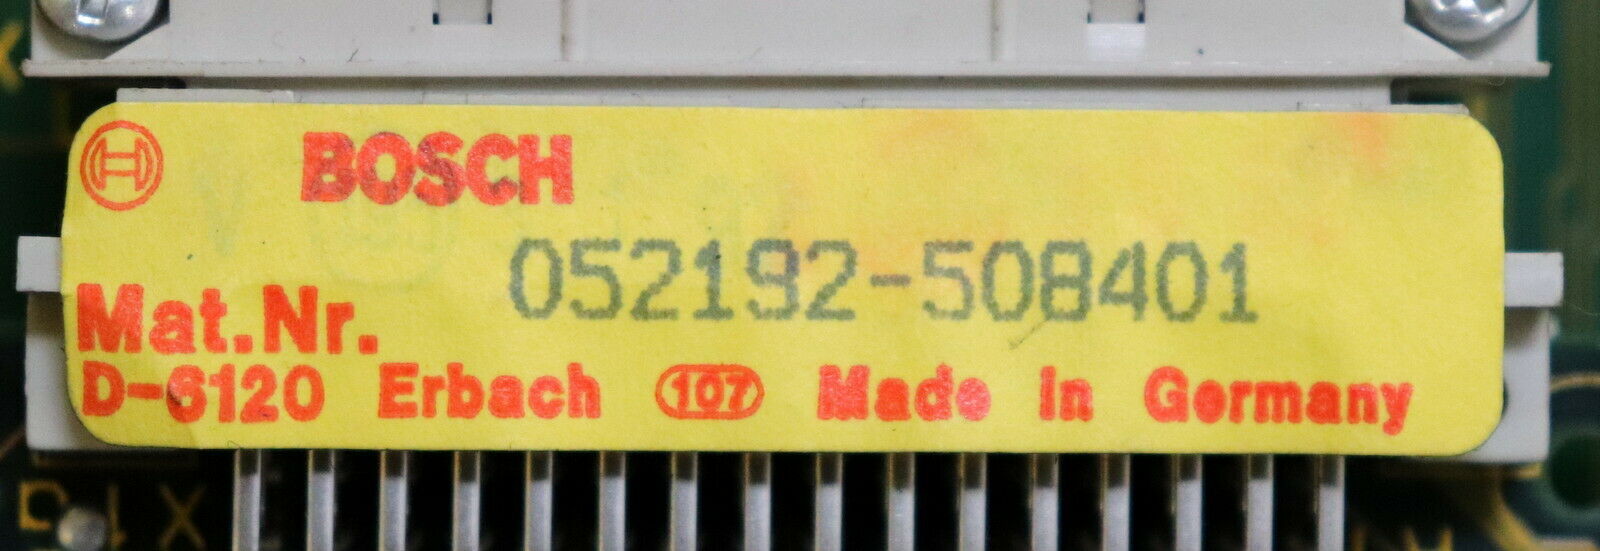 BOSCH Speichermodul M601 Mat.Nr. 064837-105401 mit EPROM 64k Nr. 062366-103401